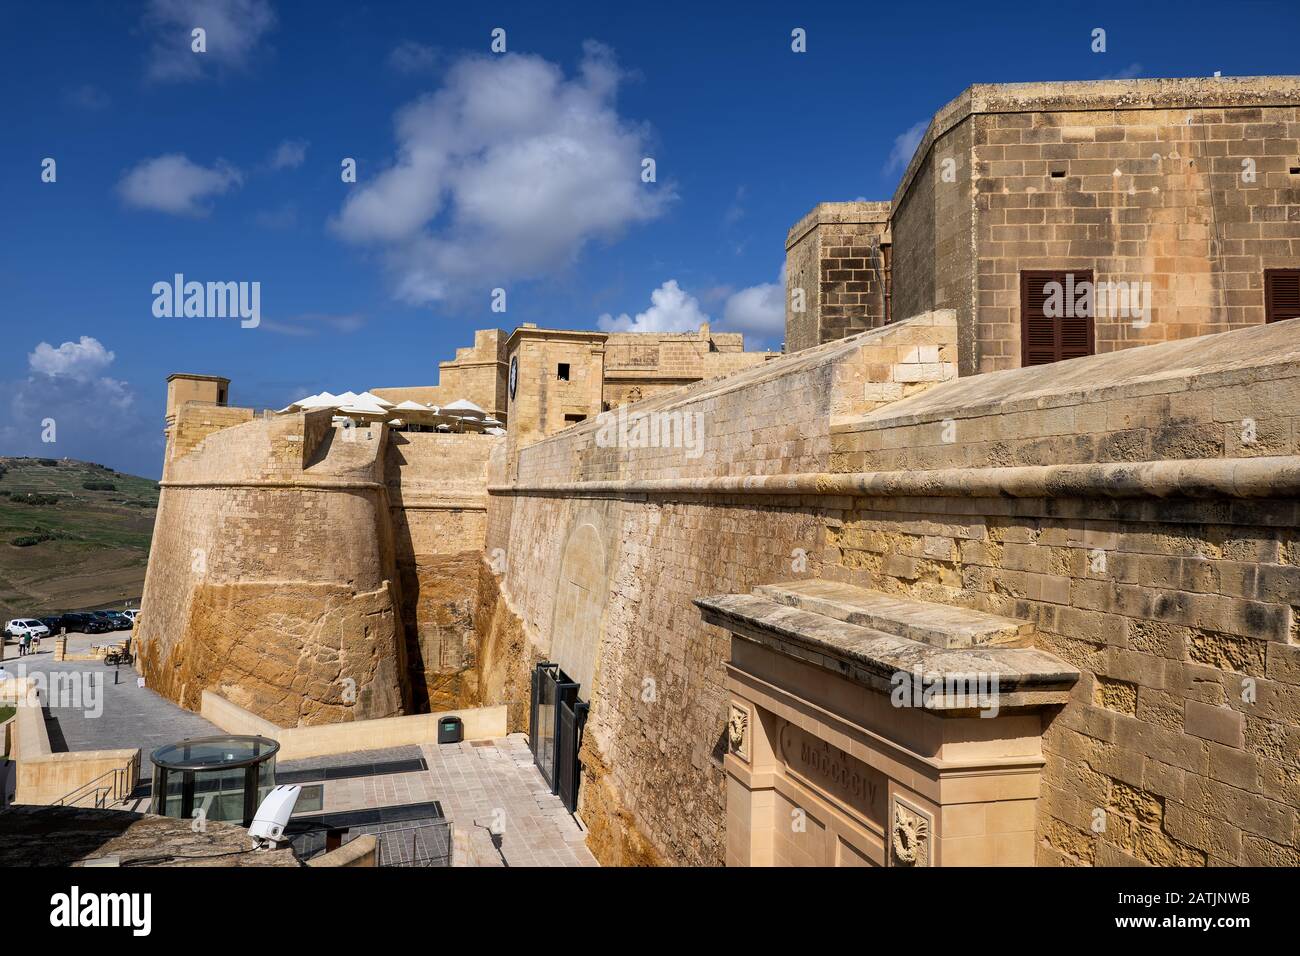 Die Cittadella in der Stadt Victoria (Rabat) auf der Gozo-Insel, Malta, Zitadelle aus Kalksteinen aus dem 15. Bis 17. Jahrhundert. Stockfoto